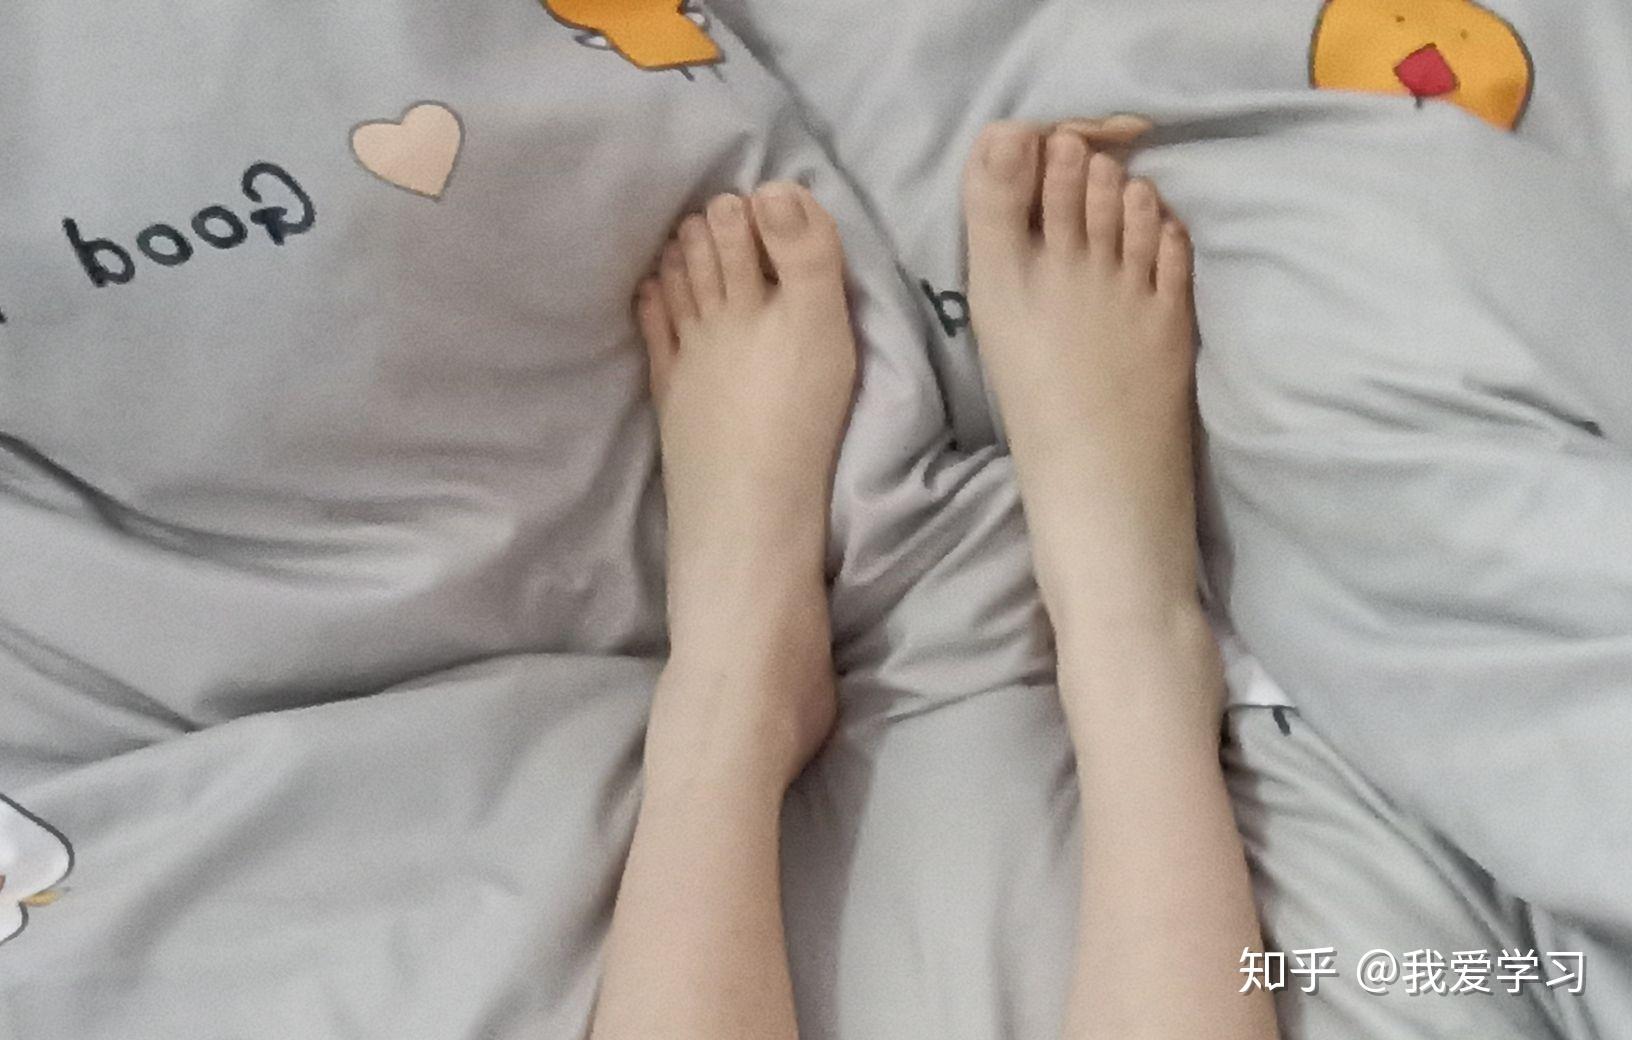 我是个严重的裸脚控兼手控,你觉得什么样的脚才算漂亮呢?